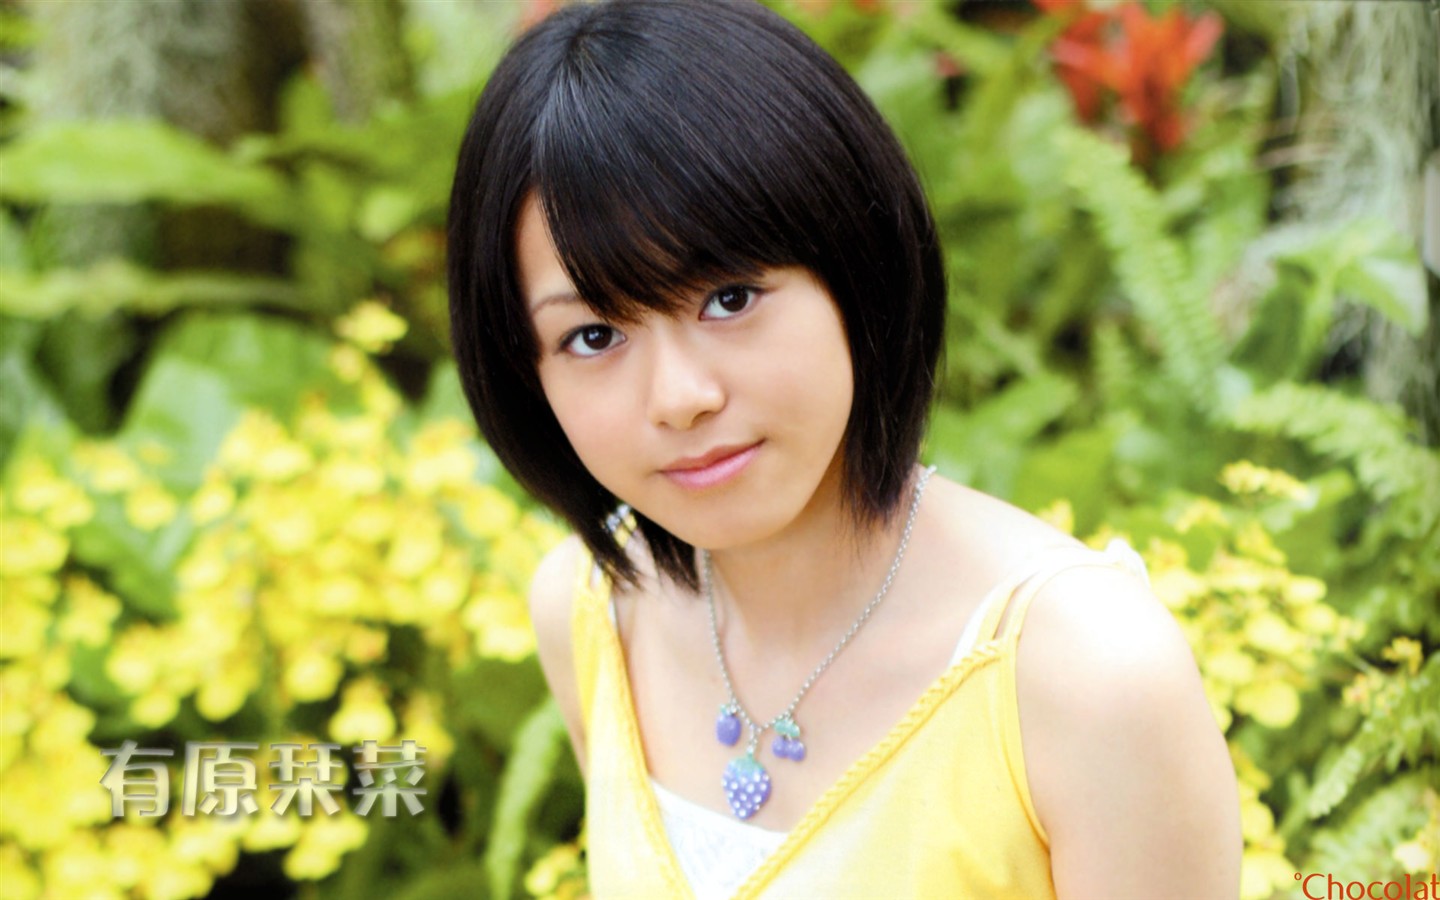 Cute belleza japonesa portafolio de fotos #9 - 1440x900